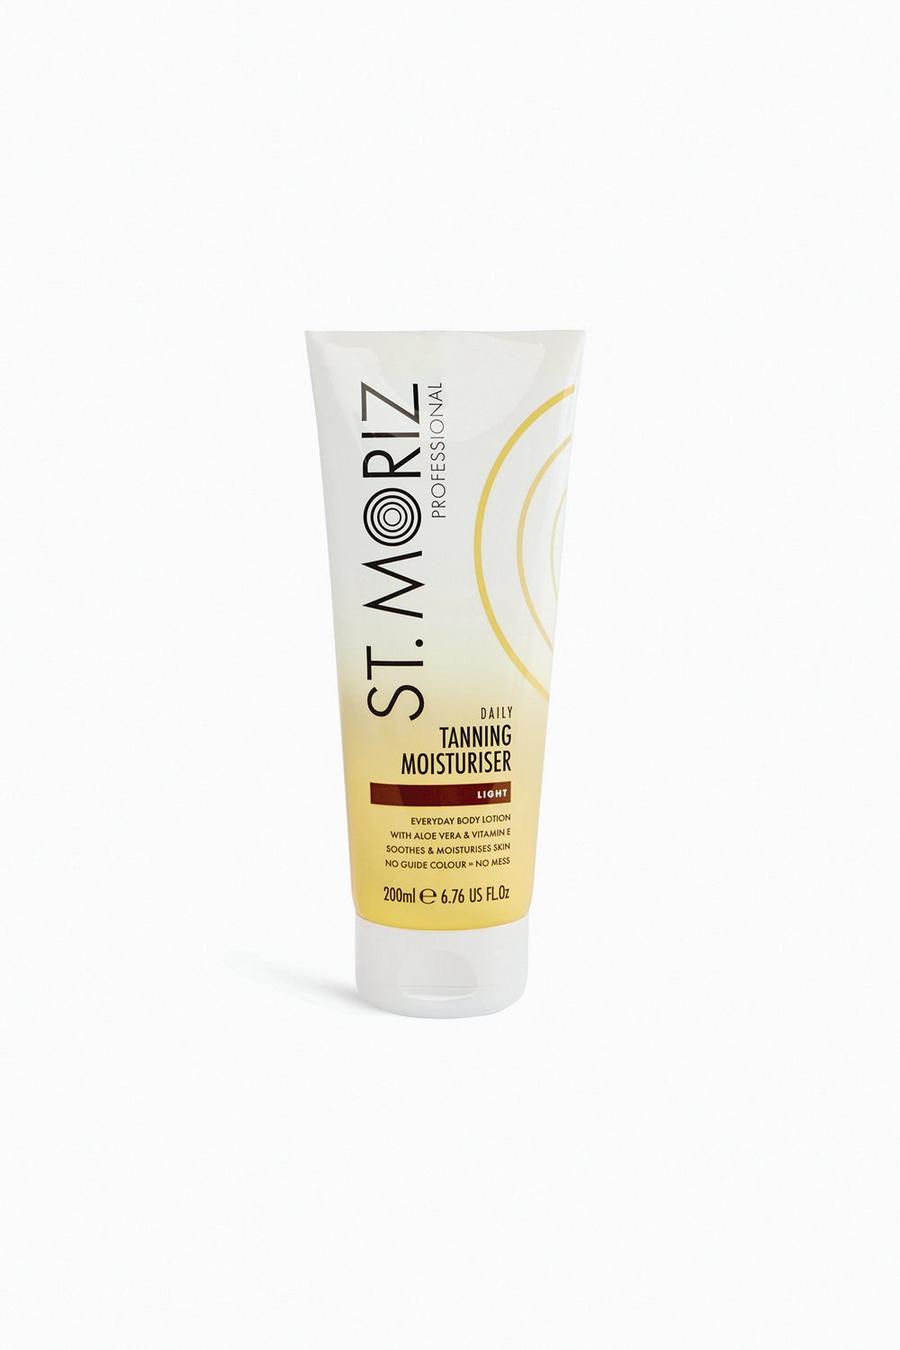 White blanc St. Moriz Professional Daily Tanning Moisturiser Light 200ml